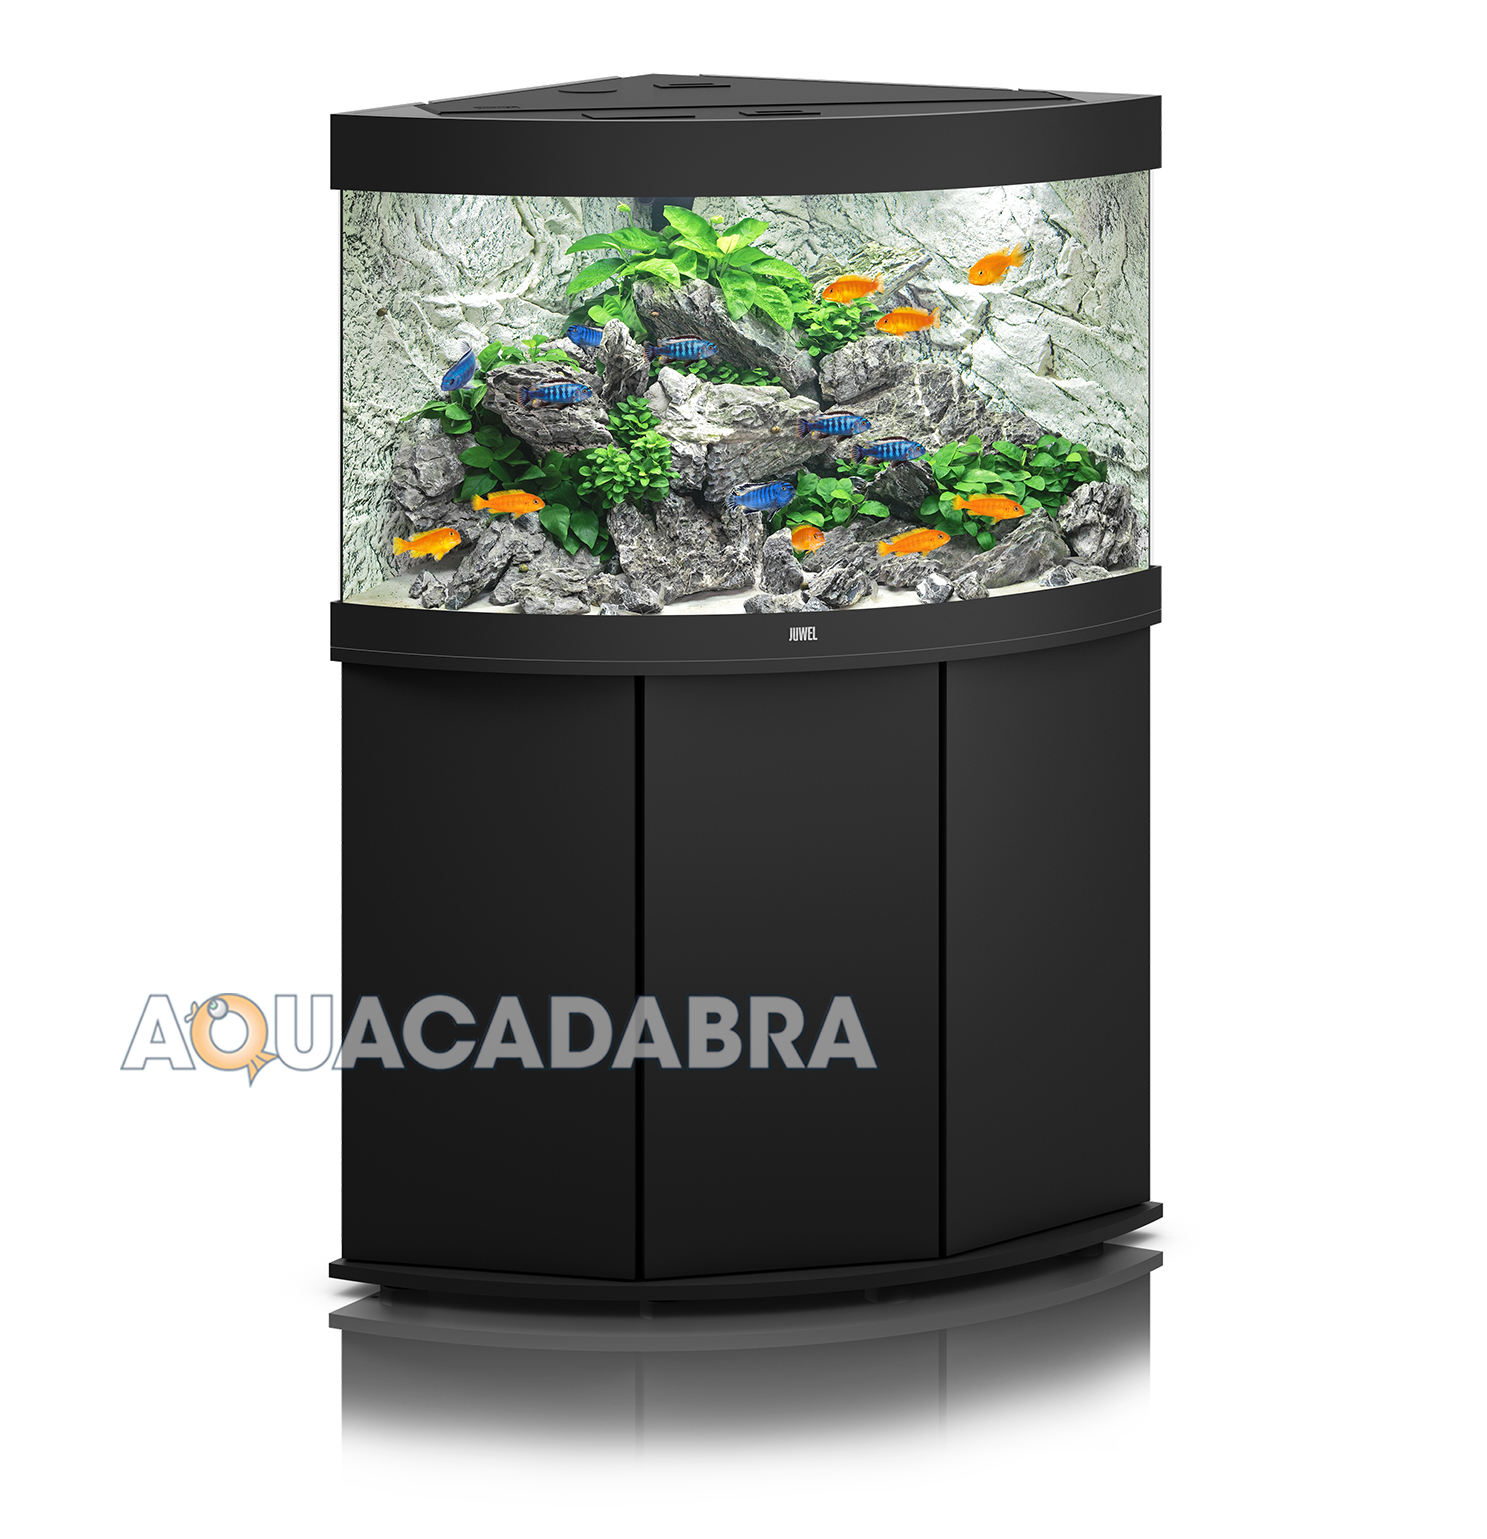 rundvlees Illustreren Bemiddelaar Juwel Trigon 190 Aquarium & Cabinet - LED Lighting, Filter, Pump, Heater  Tank | eBay